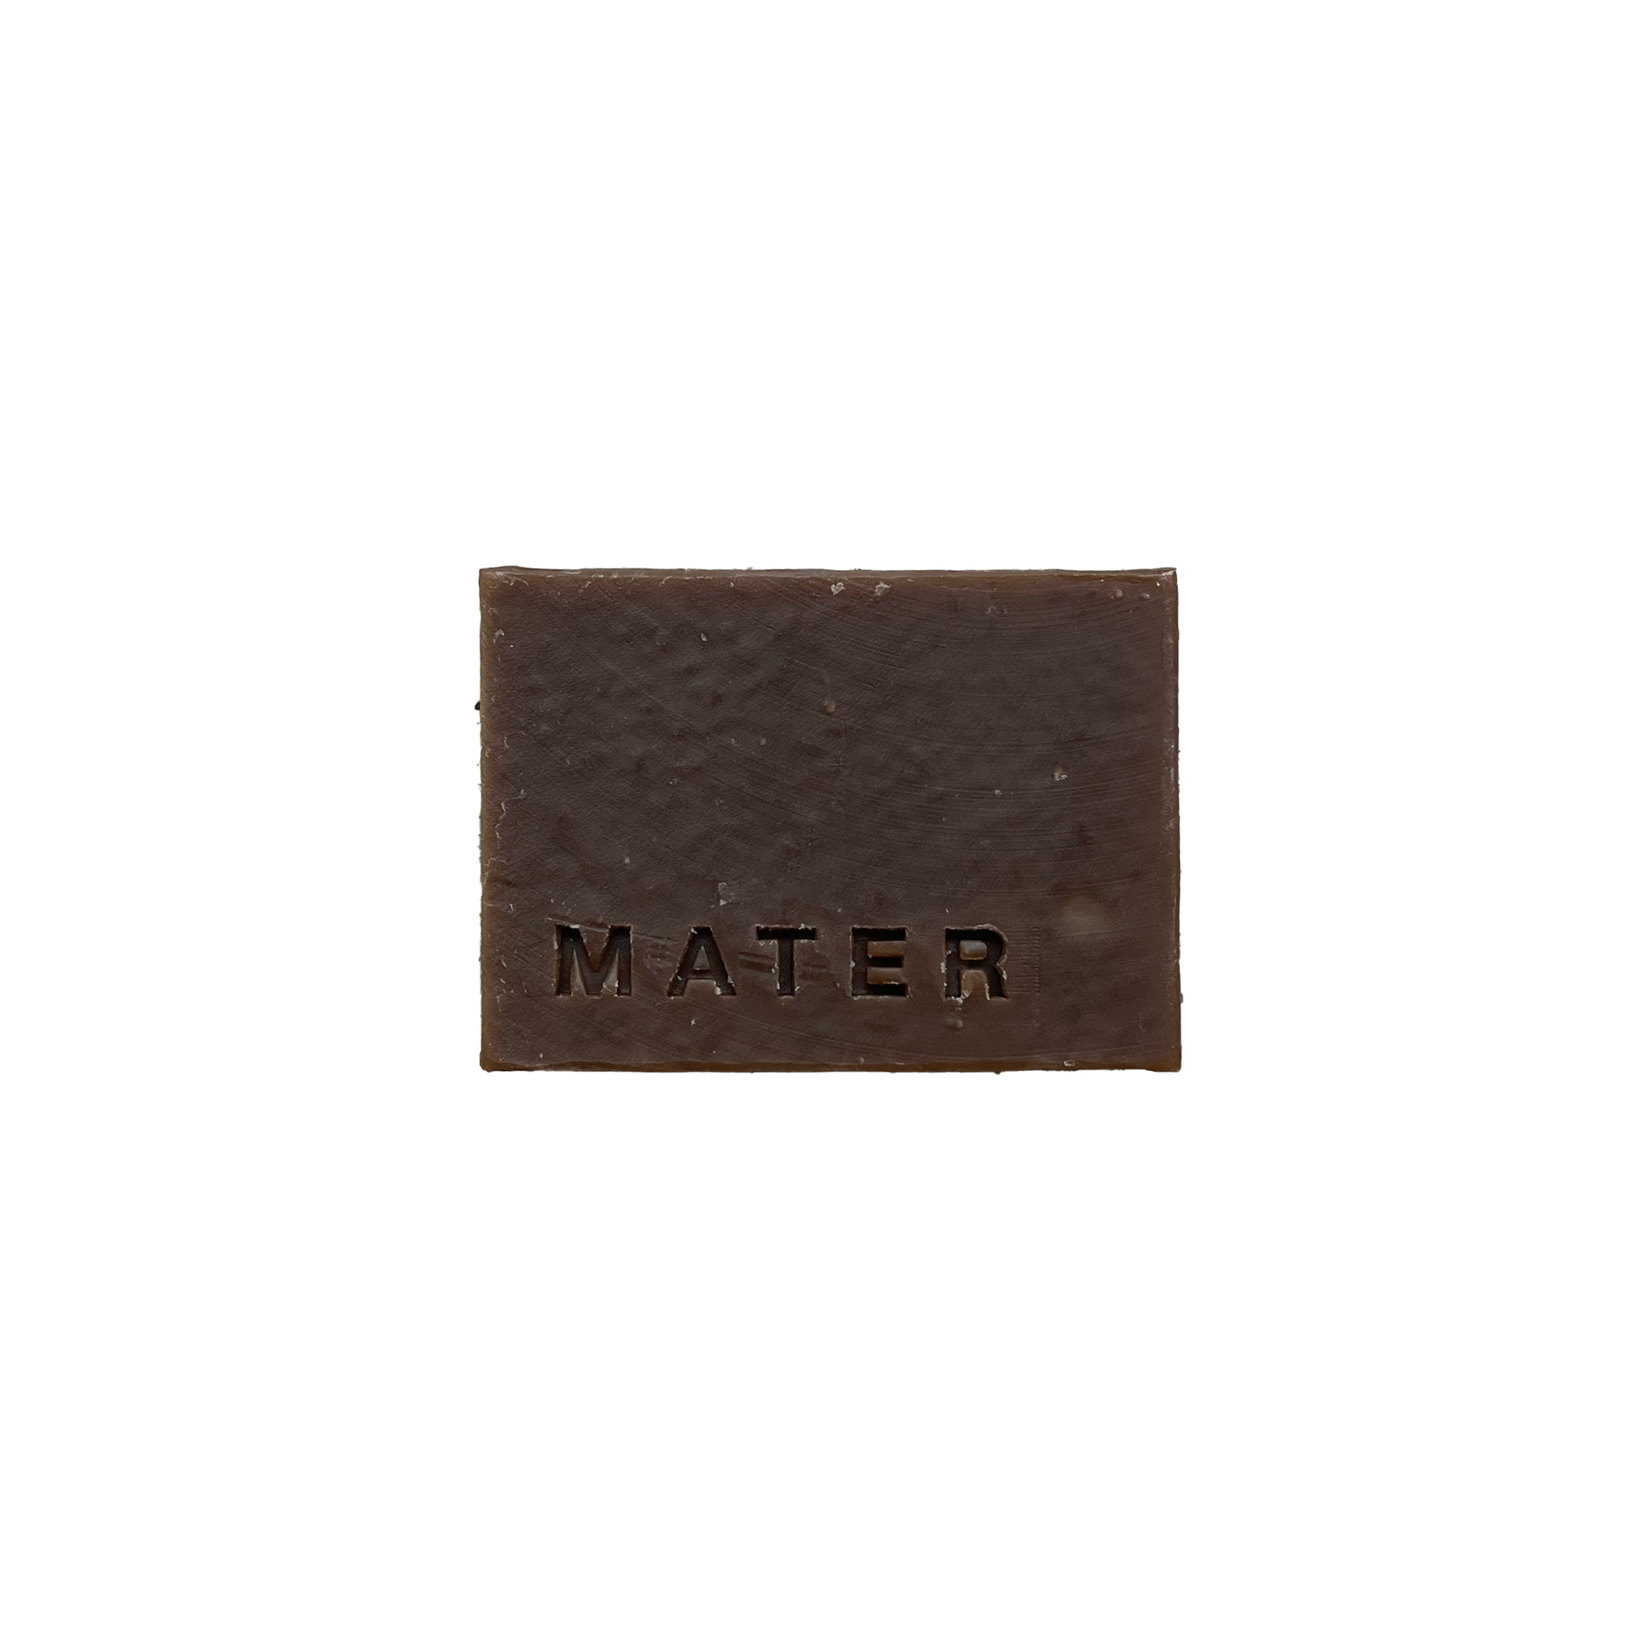 Mater Mater Pine Tar Bar soap